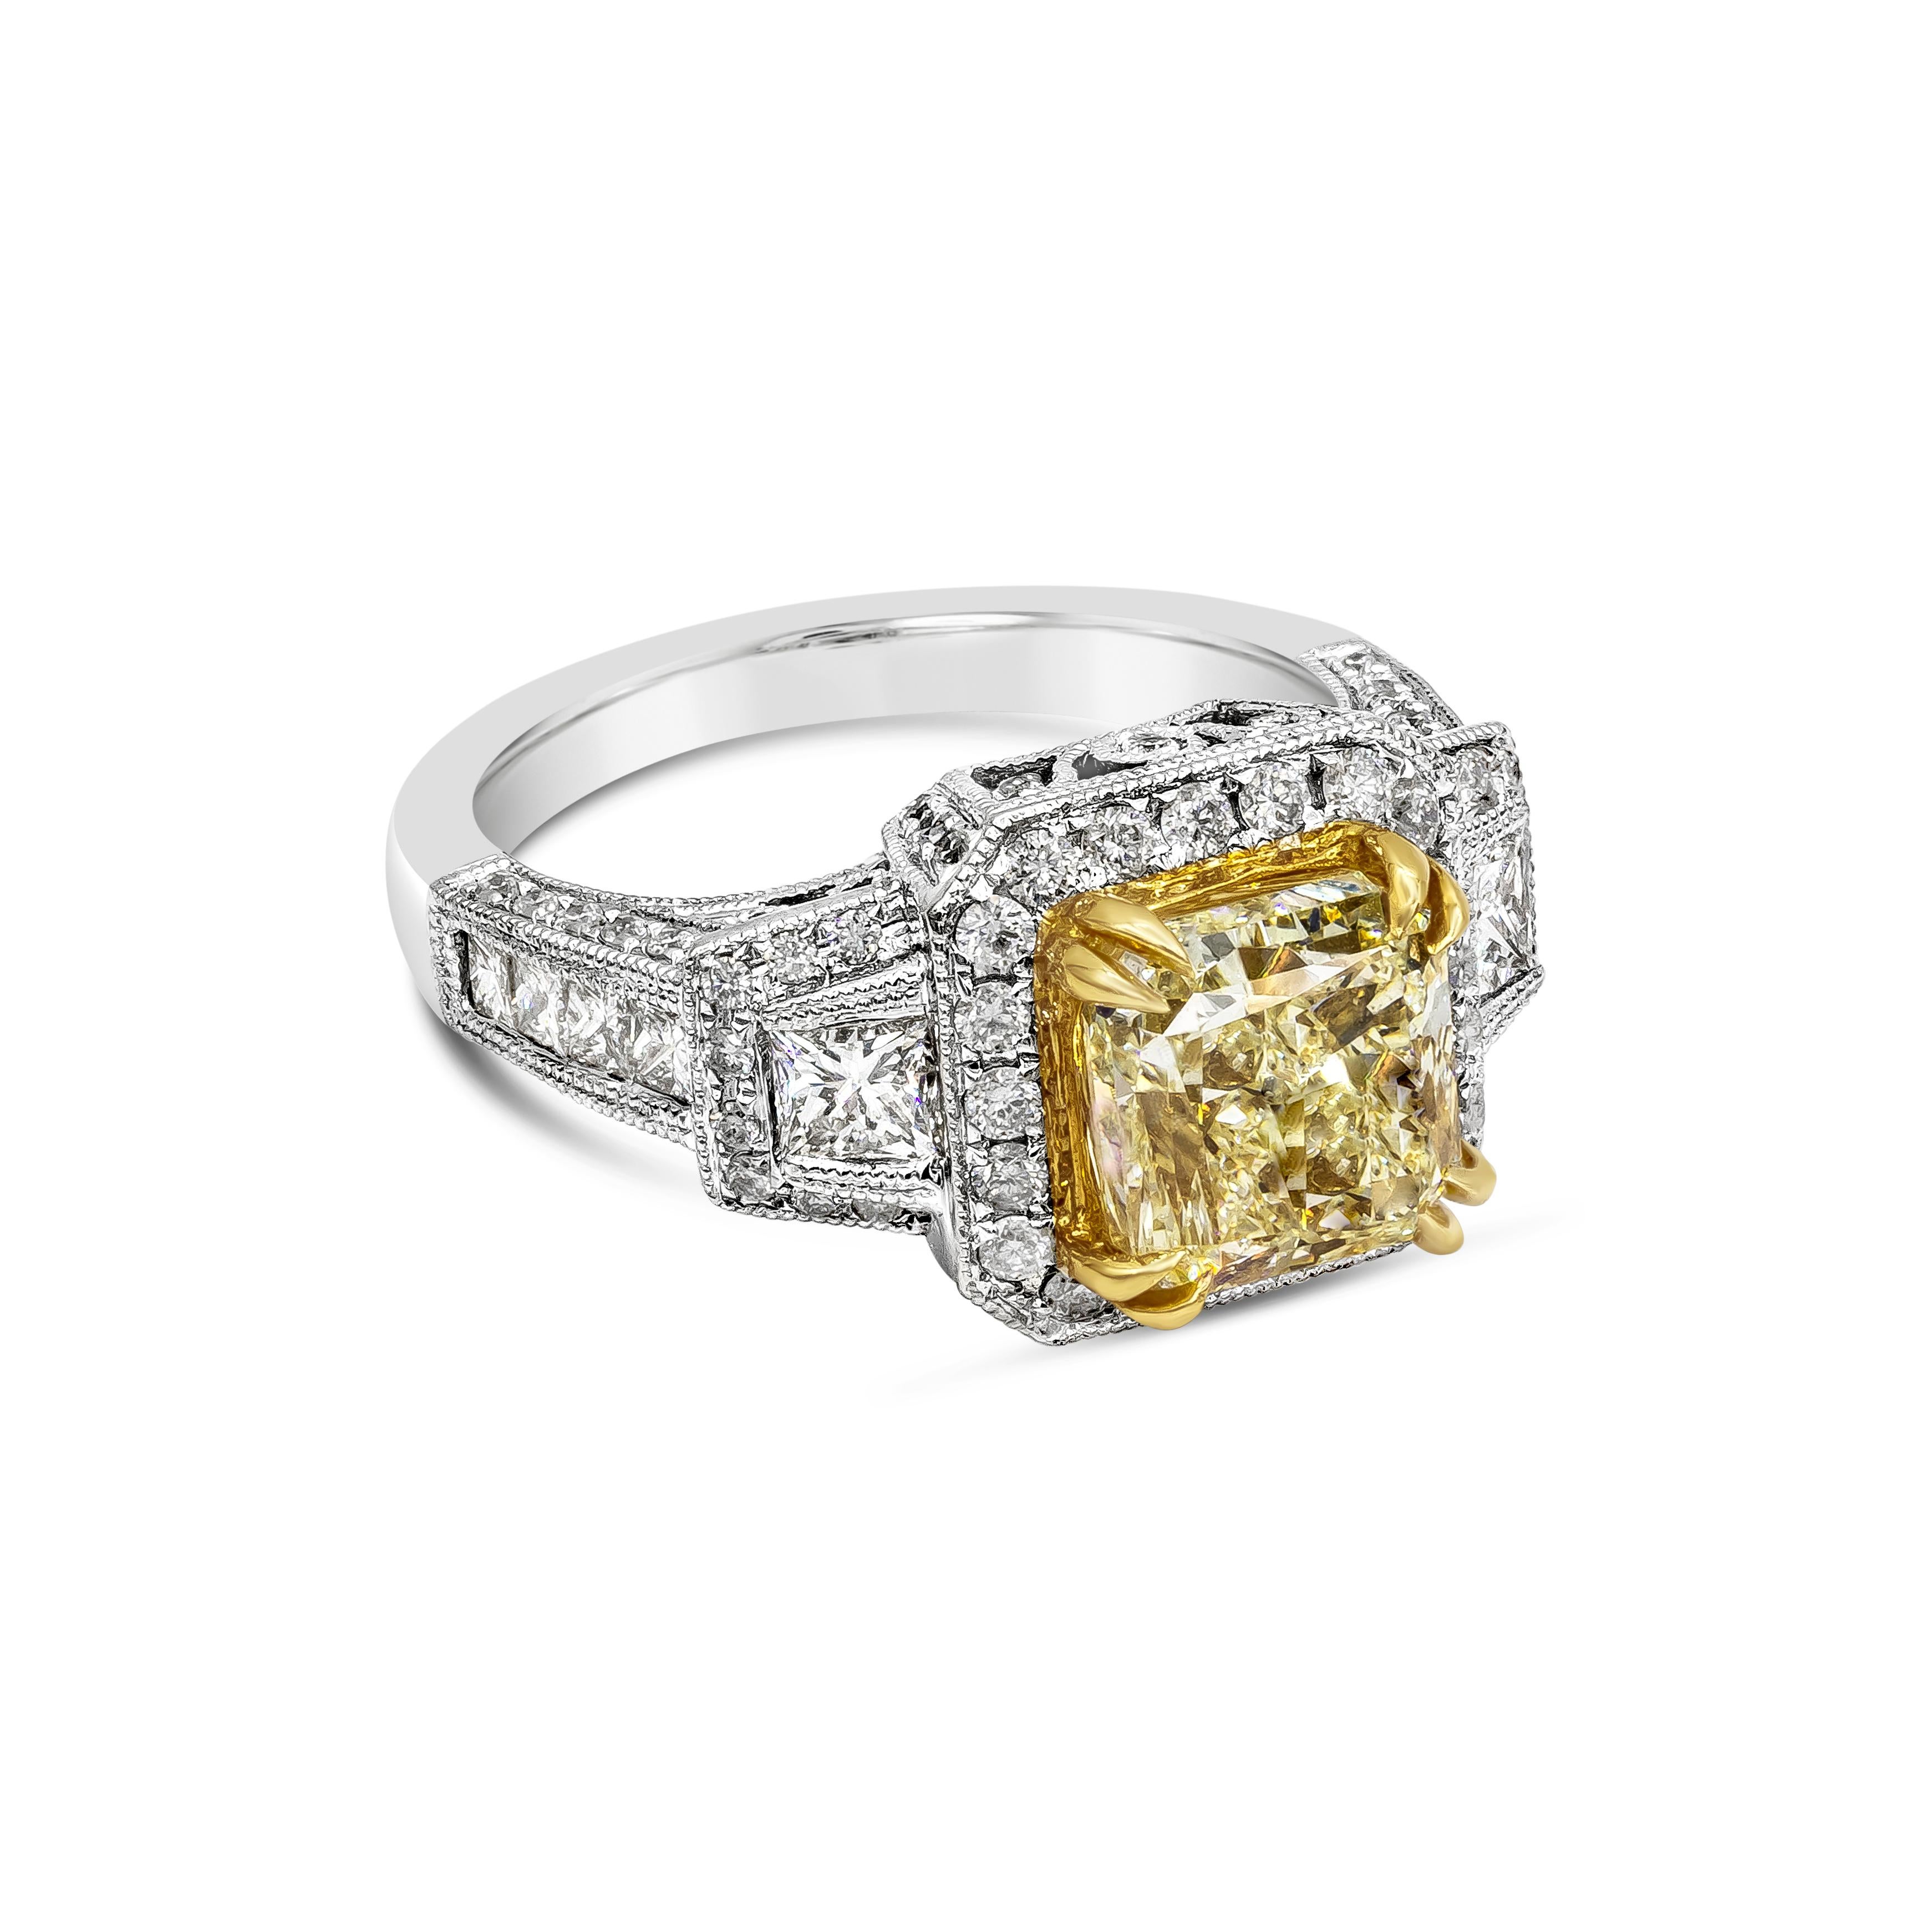 Ein Verlobungsring im antiken Stil mit einem GIA-zertifizierten gelben Diamanten von 3,40 Karat im Strahlenschliff, Farbe Y-Z und Reinheit Si1, gefasst in 18 Karat Gelbgold mit acht Zacken. Umgeben von runden Diamanten in Halo-Fassung und